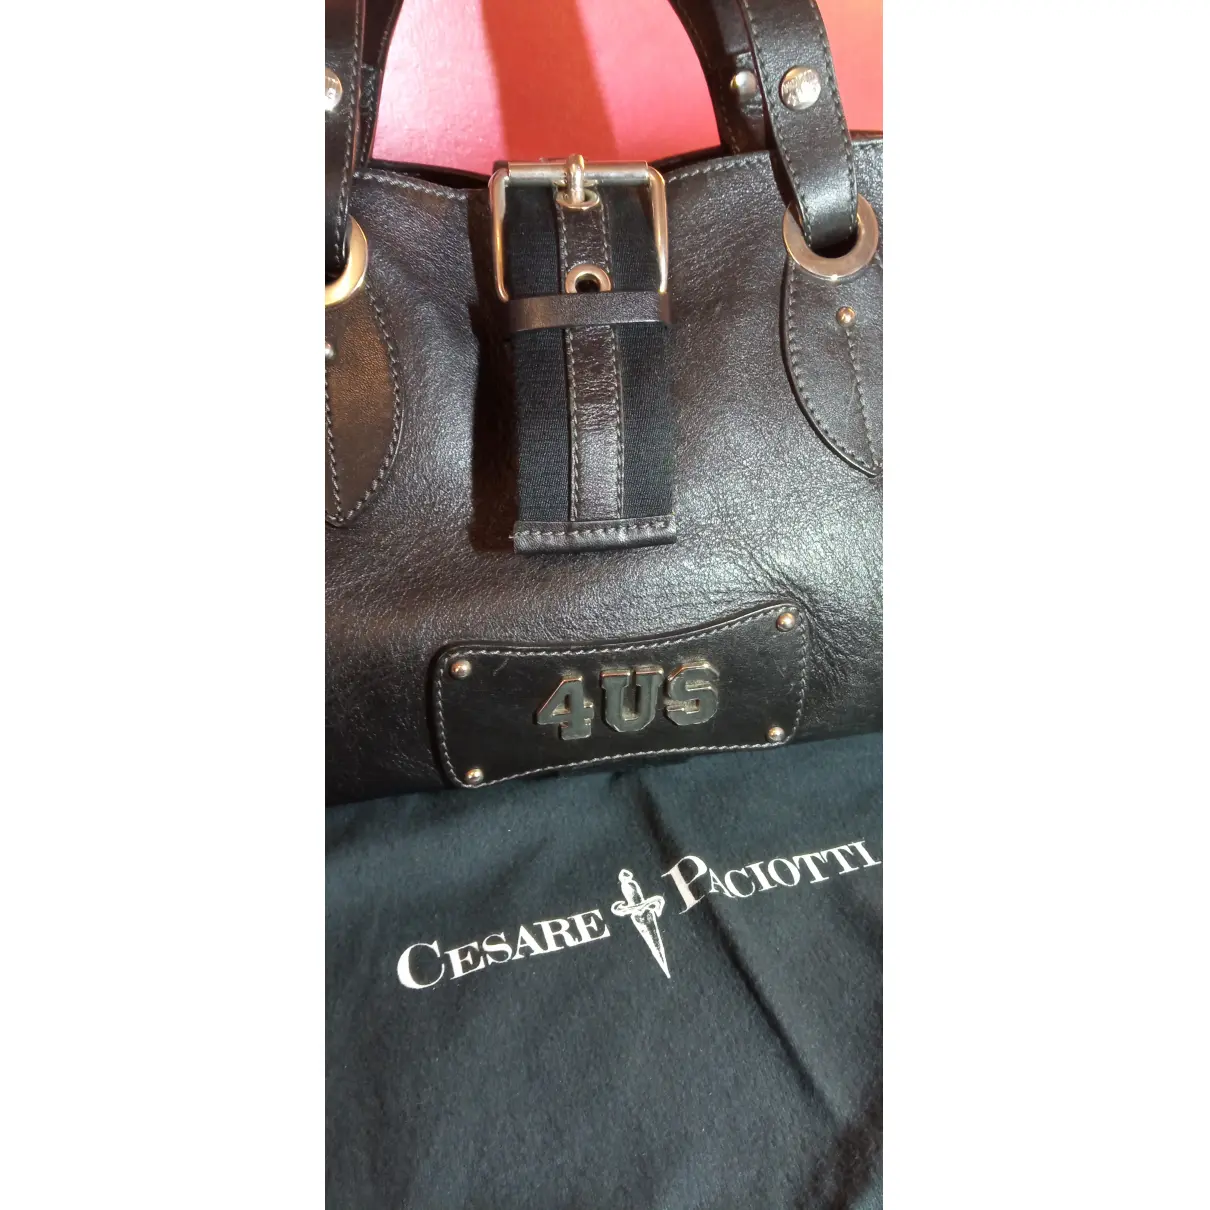 Leather handbag Cesare Paciotti